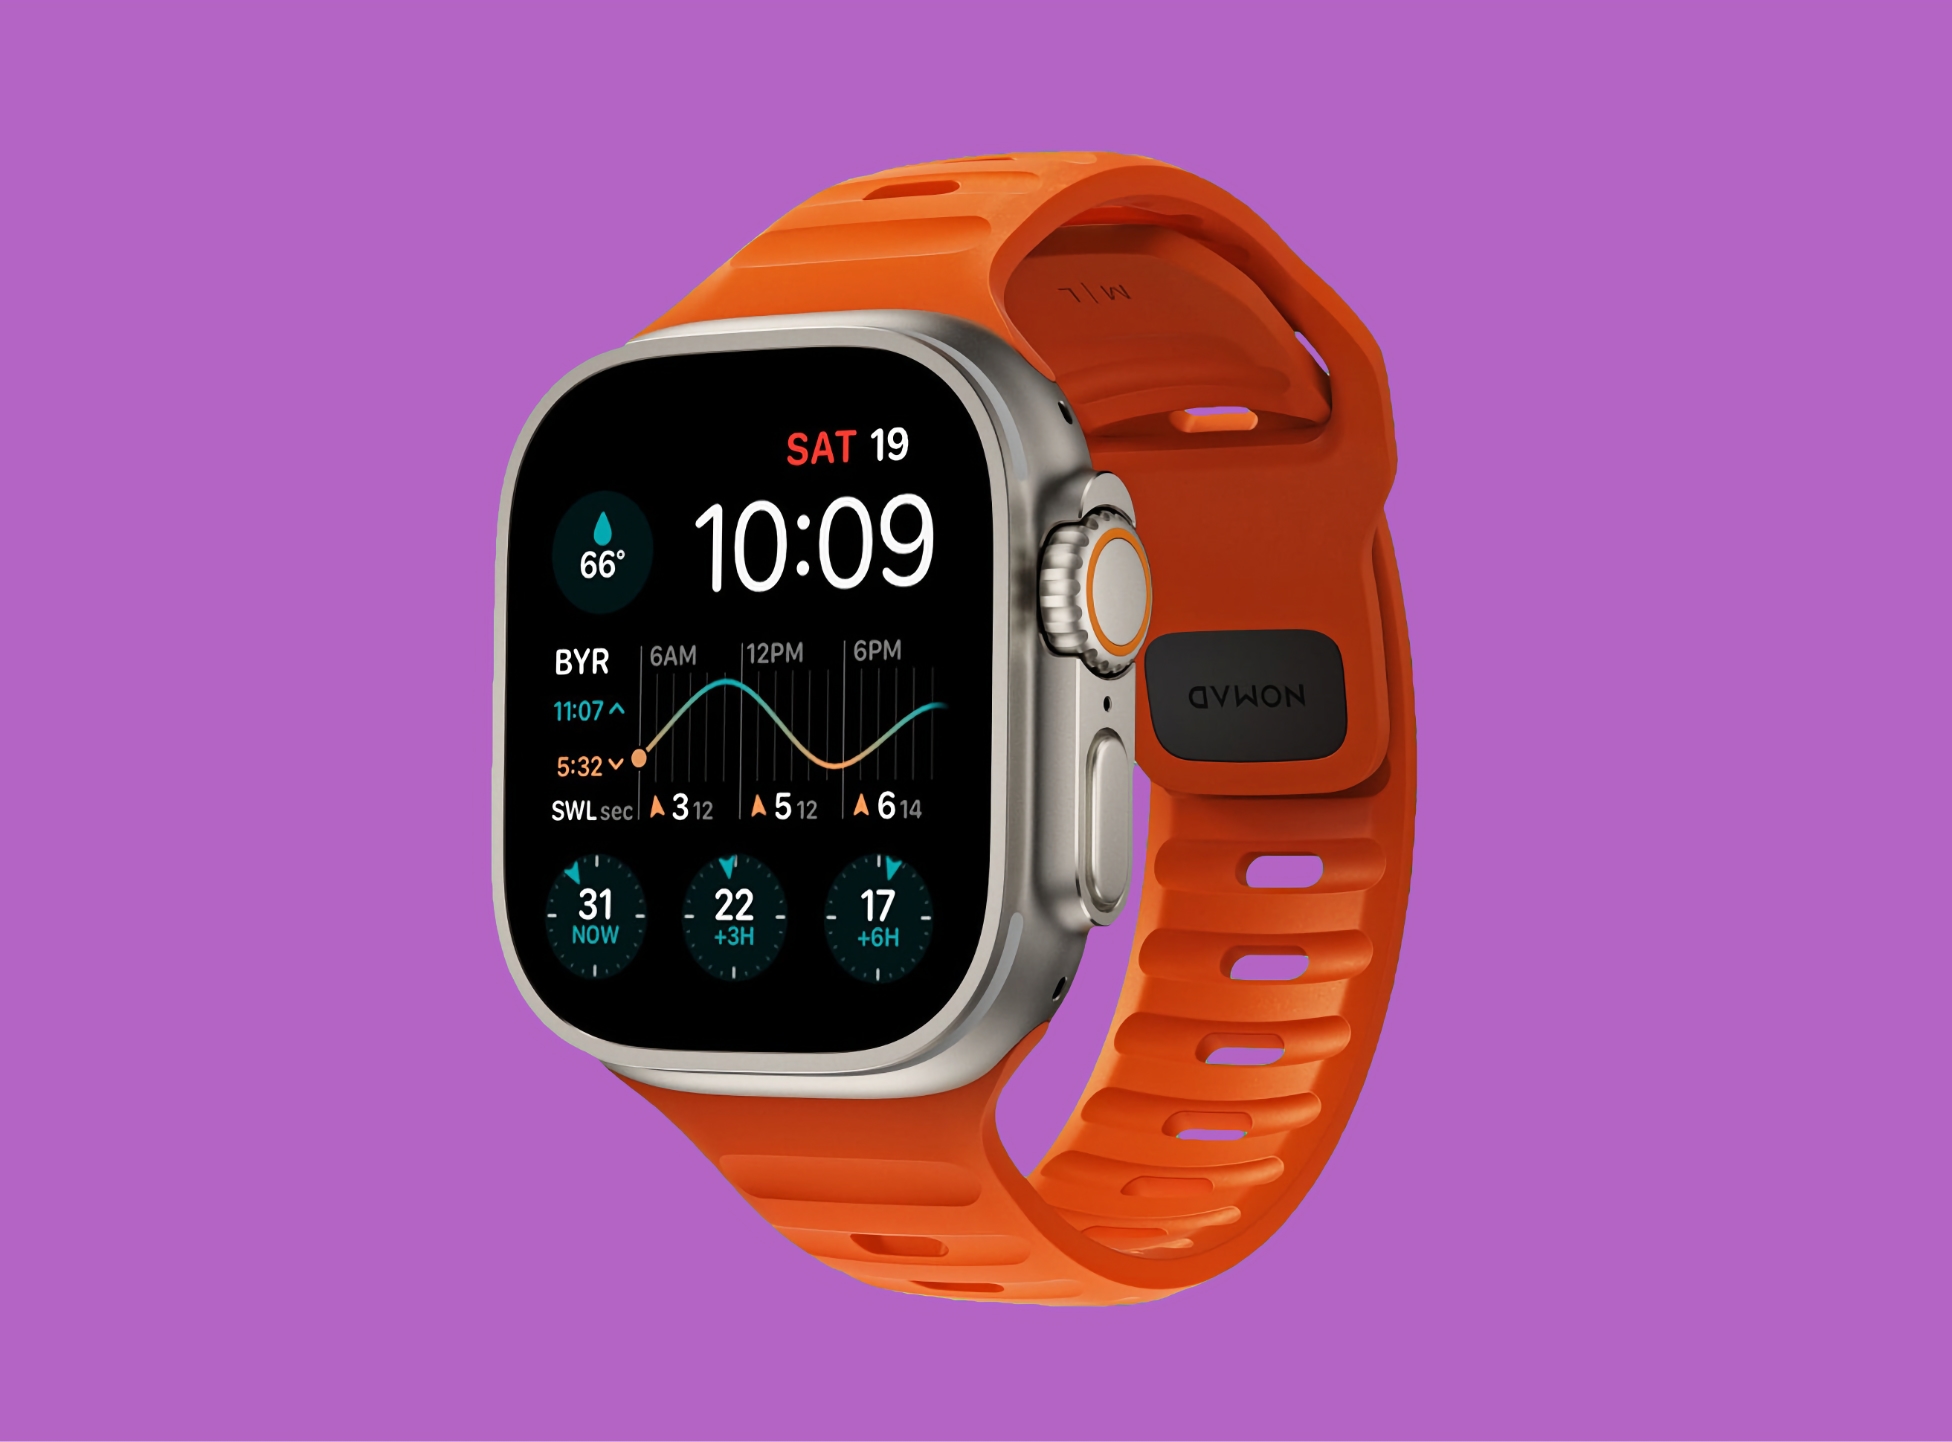 Apple wydaje watchOS 9.6.1 dla Apple Watch, aktualizacja naprawia poważny błąd w oprogramowaniu